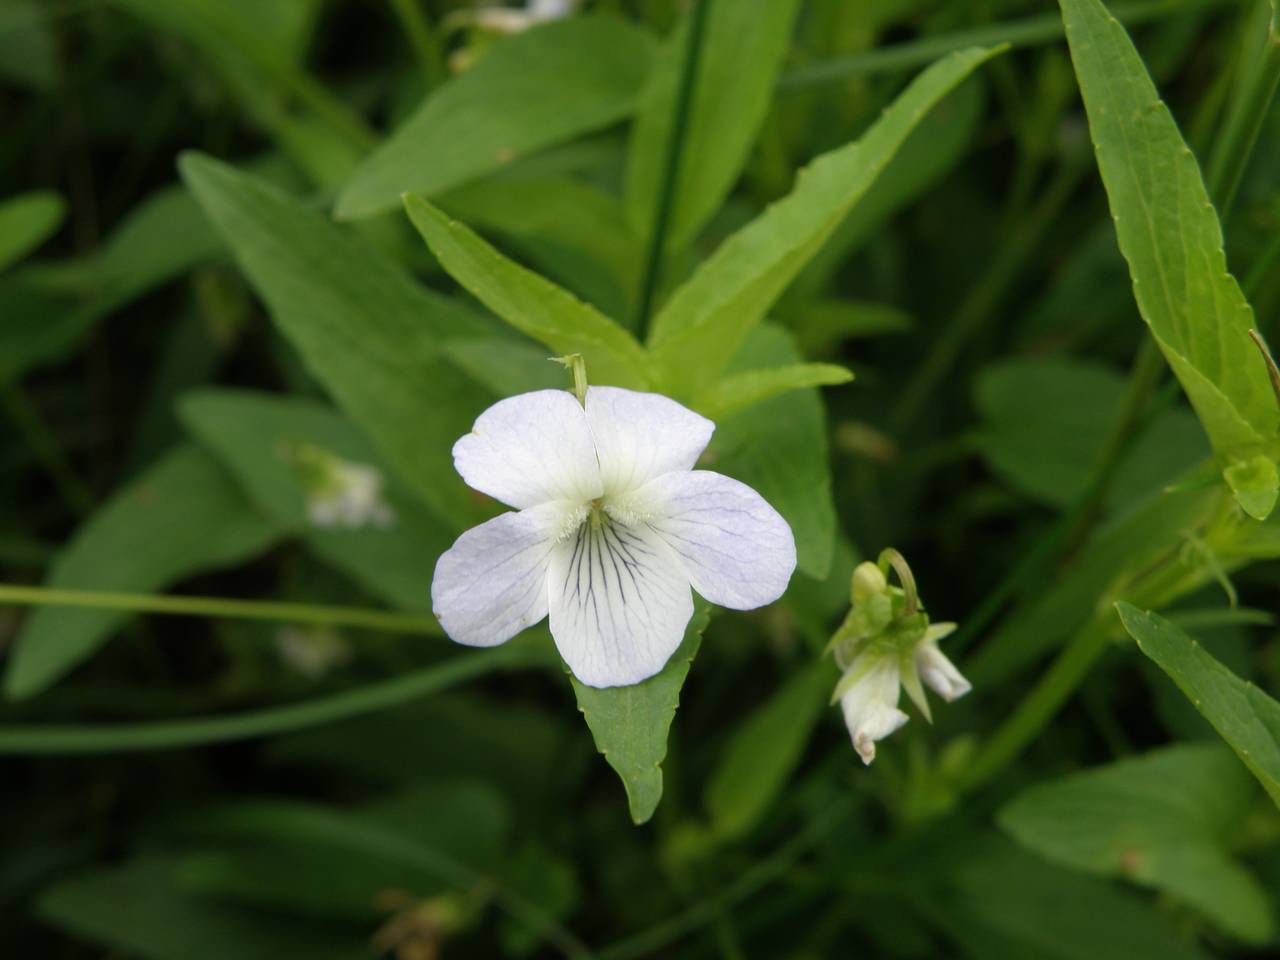 Viola stagnina Kit., Восточная Европа, Центральный район (E4) (Россия)